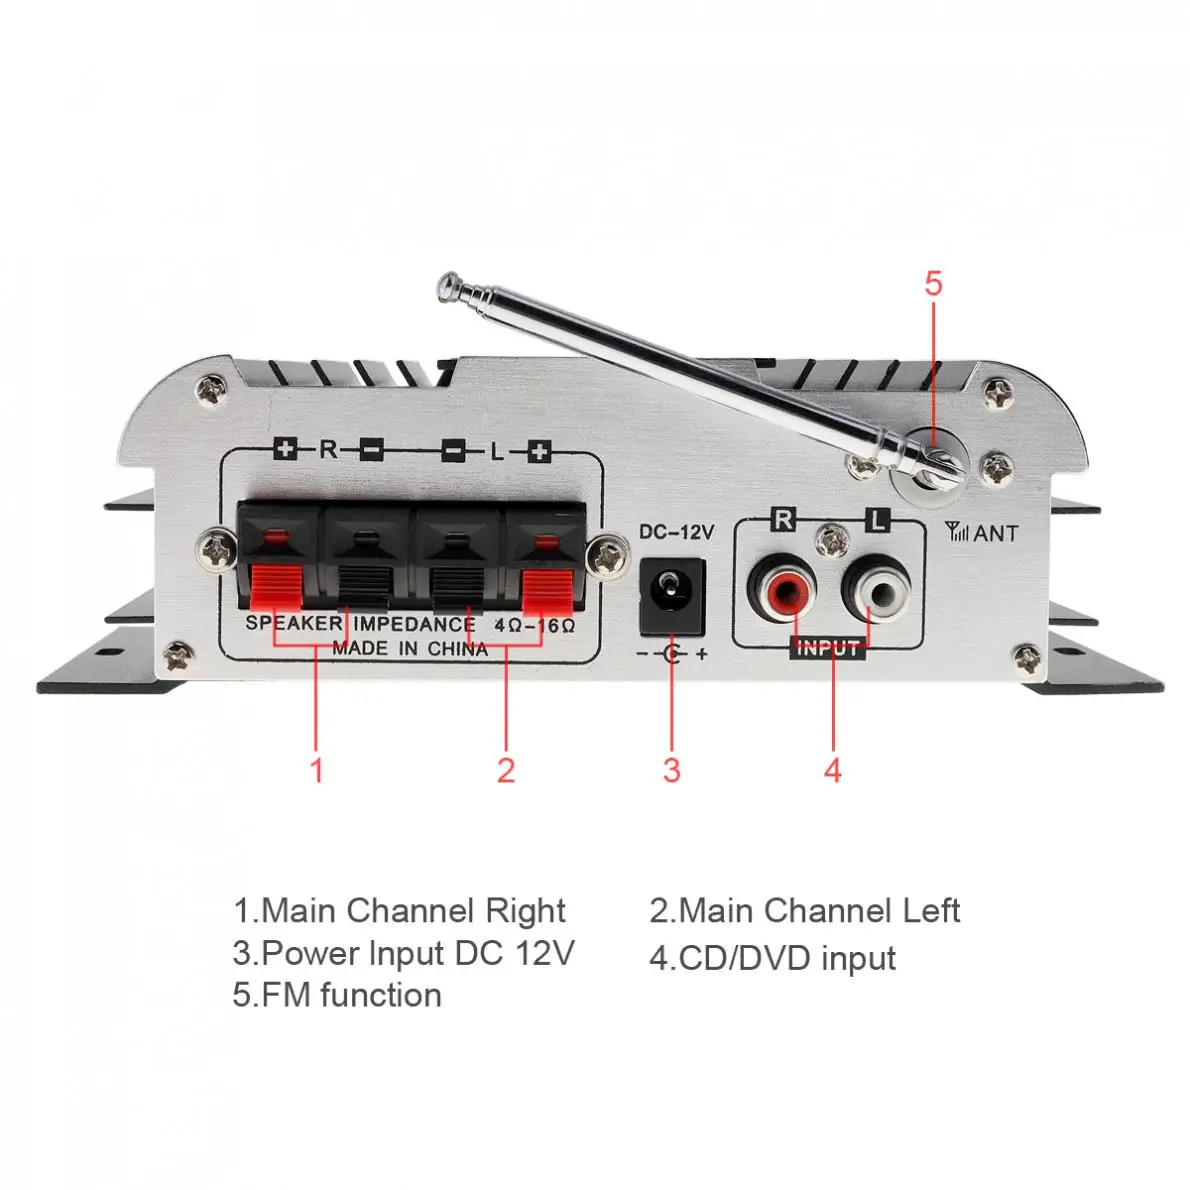 Kentiger HY-600 2CH Hi-Fi автомобильный аудио усилитель мощности fm-радио USB MP3 стерео цифровой плеер Поддержка U диск SD/MMC карты